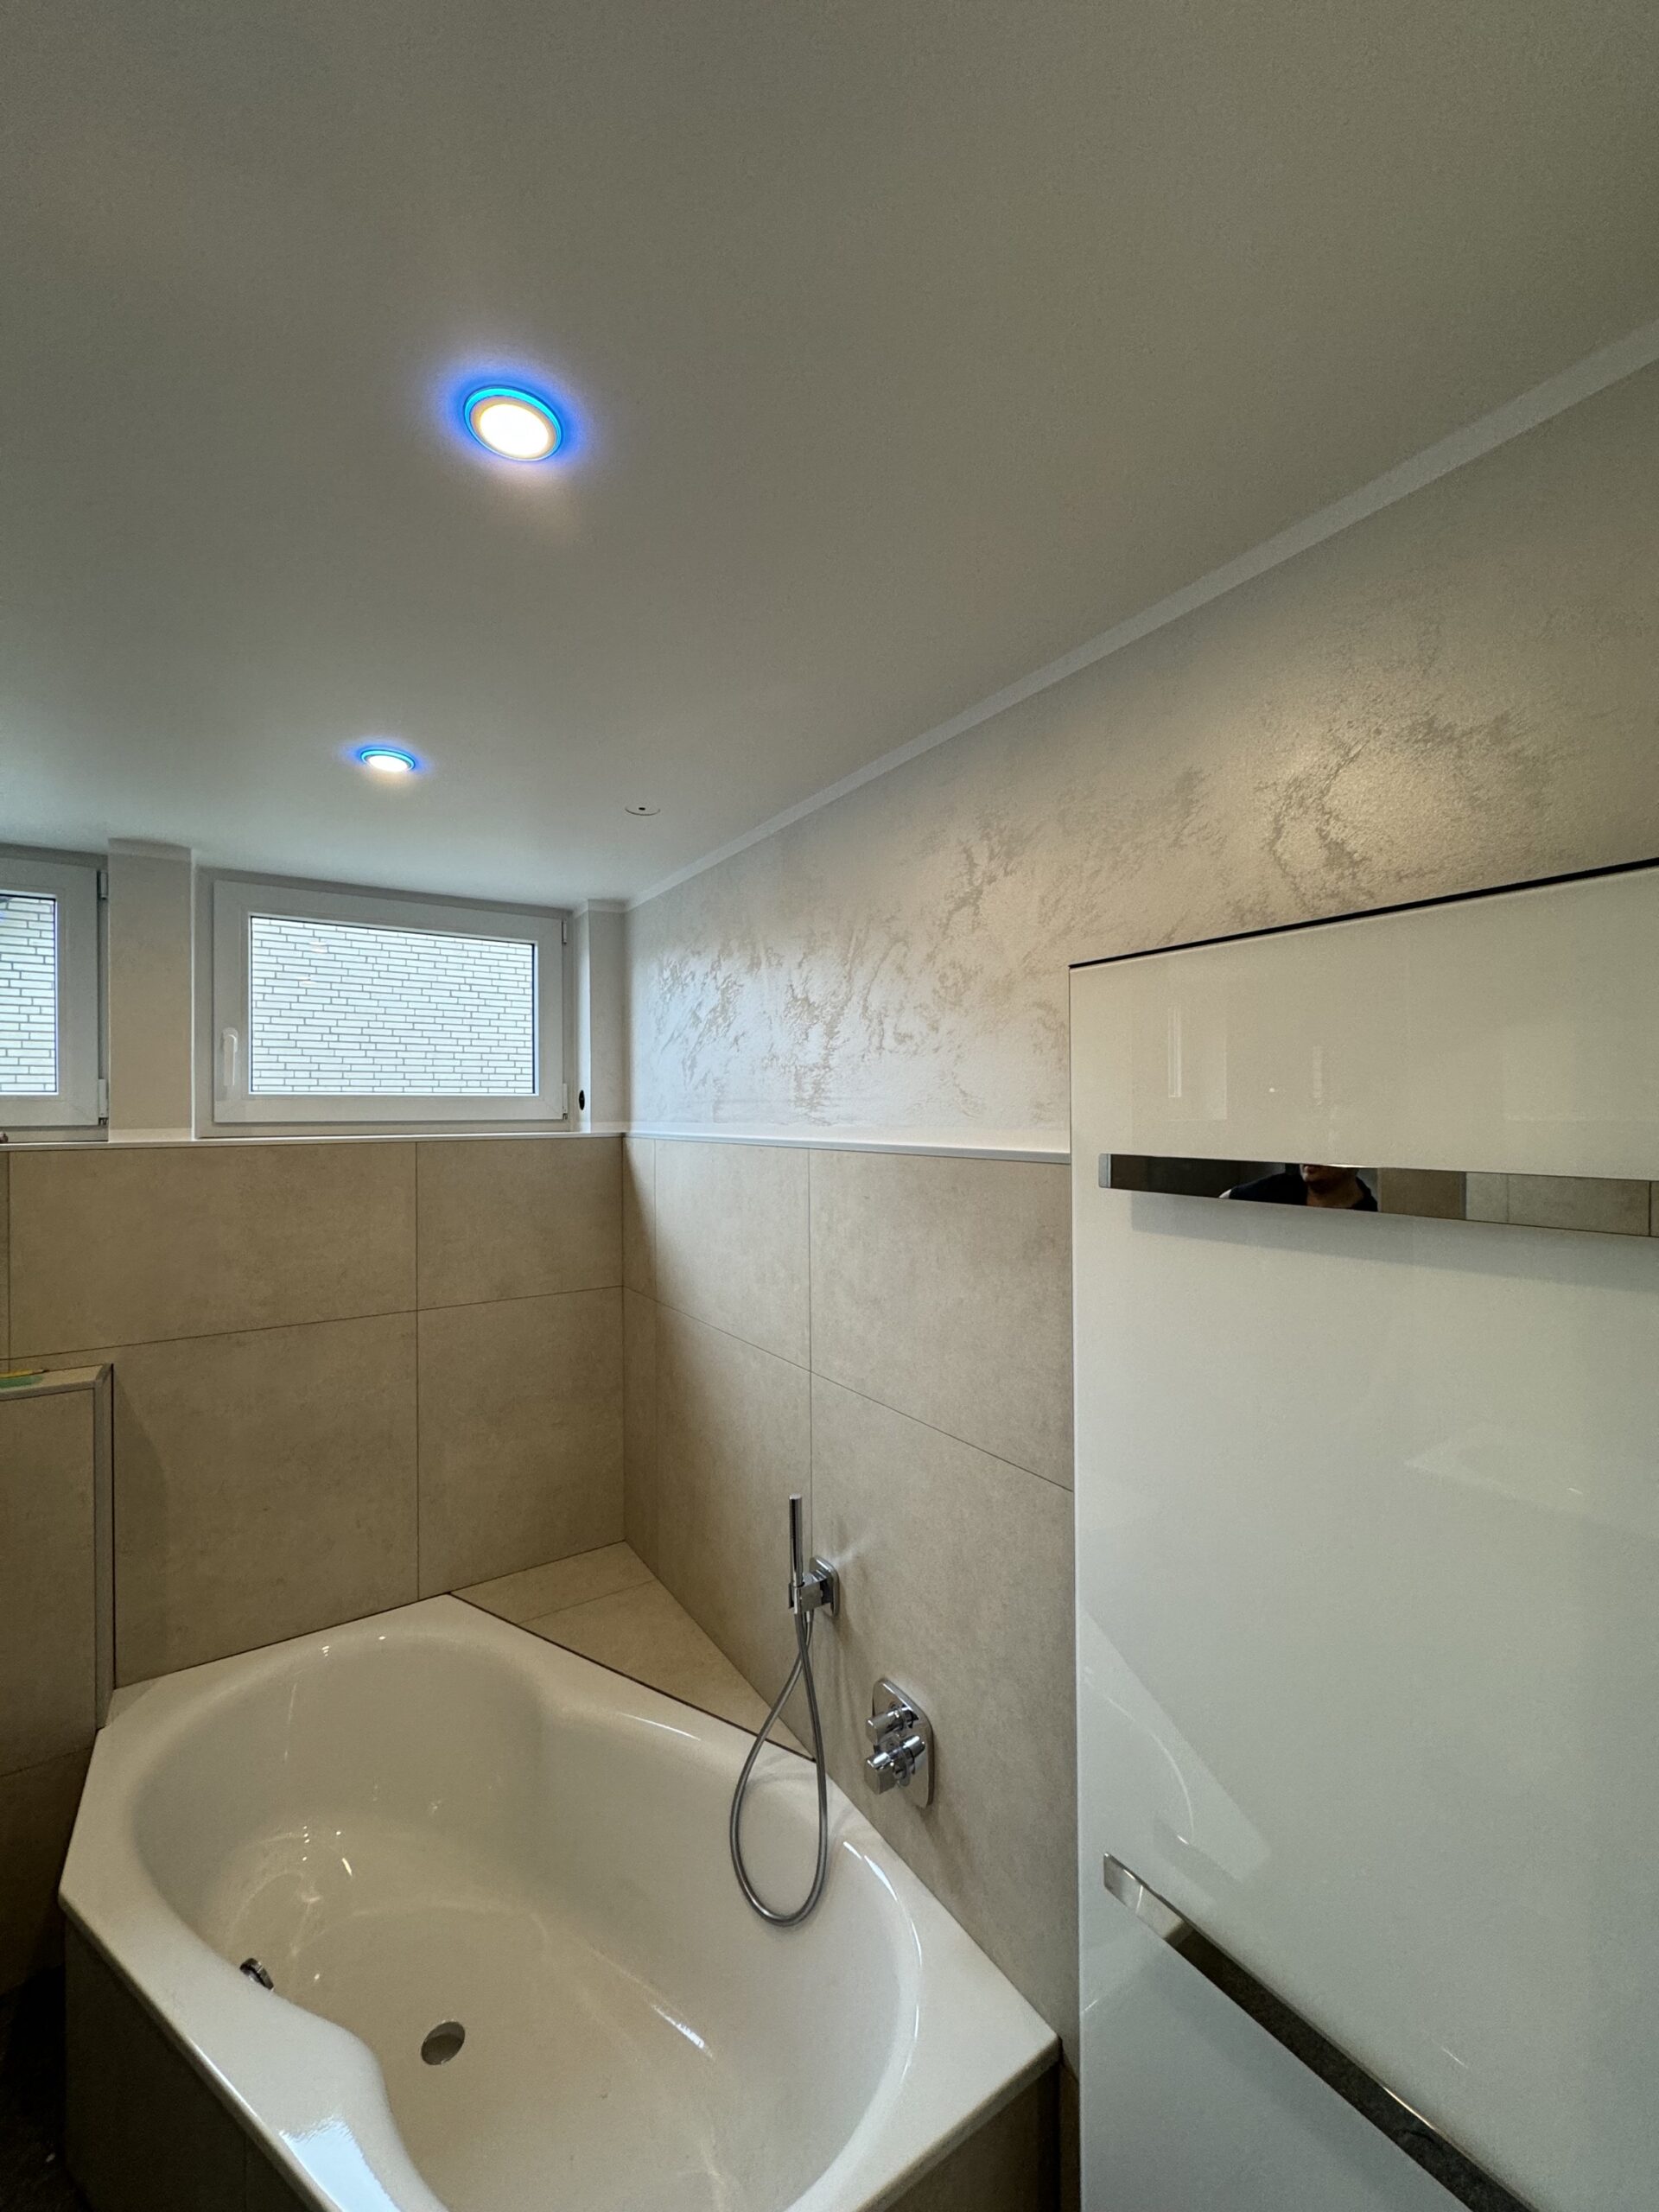 Unser neuestes Projekt im Badezimmer besticht durch hochwertige Kreativtechnik und schimmernde Effekte im Licht.